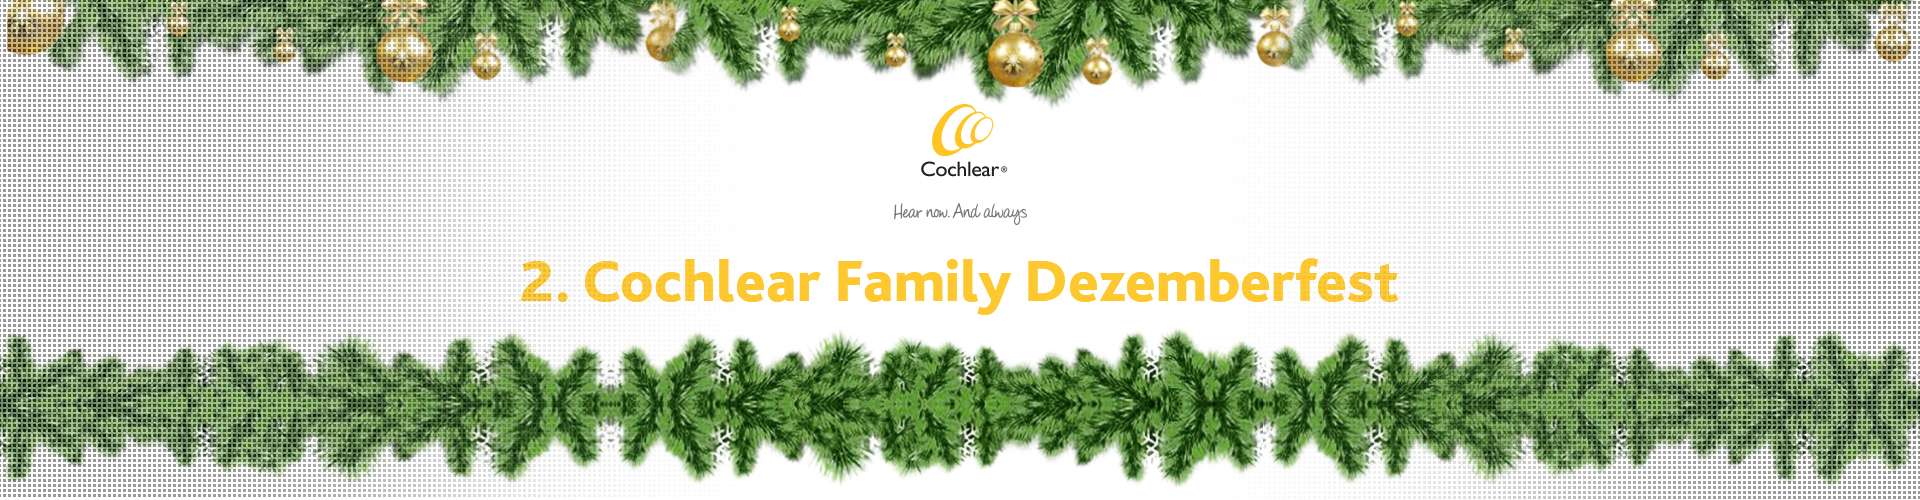 Persönliche Einladung zum 2. Cochlear Family Dezemberfest